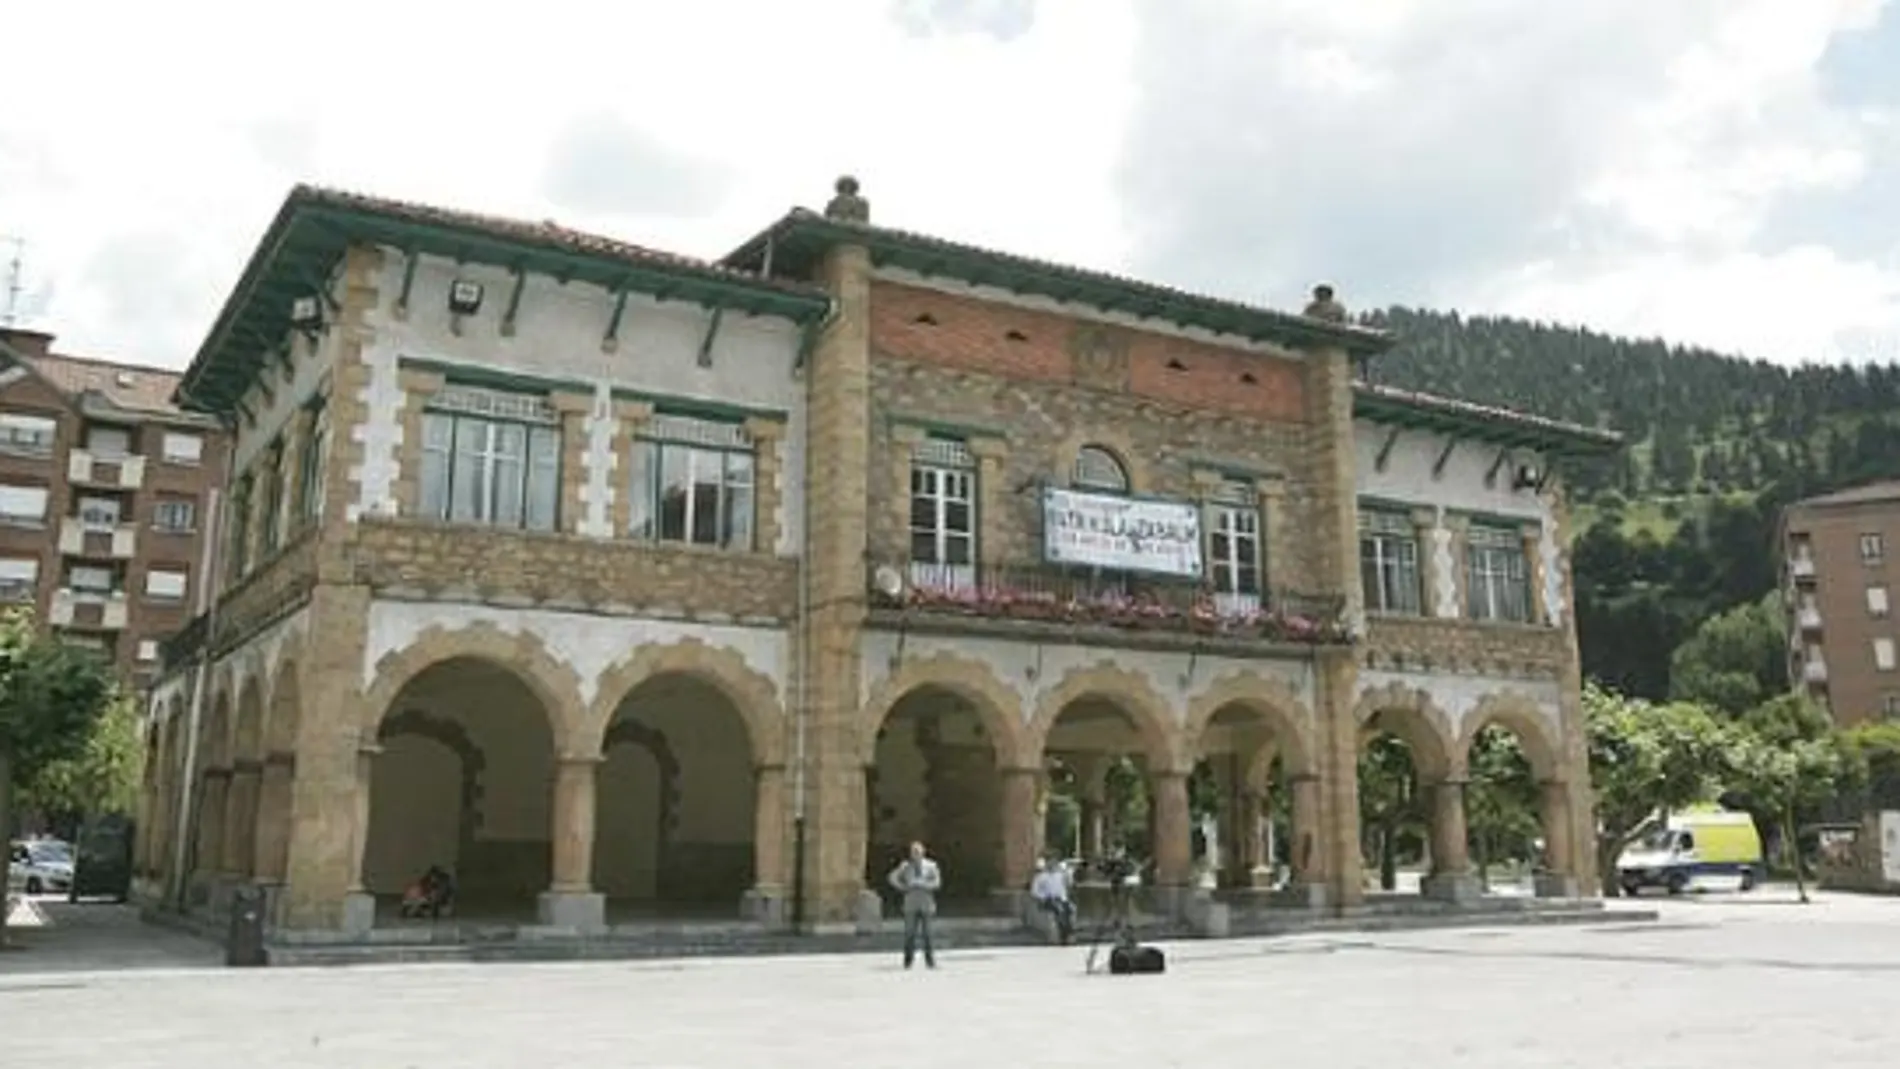 La plaza, en la imagen, está dedicada al fallecido etarra «Argala», uno de los terroristas que participaron en el asesinato de Carrero Blanco